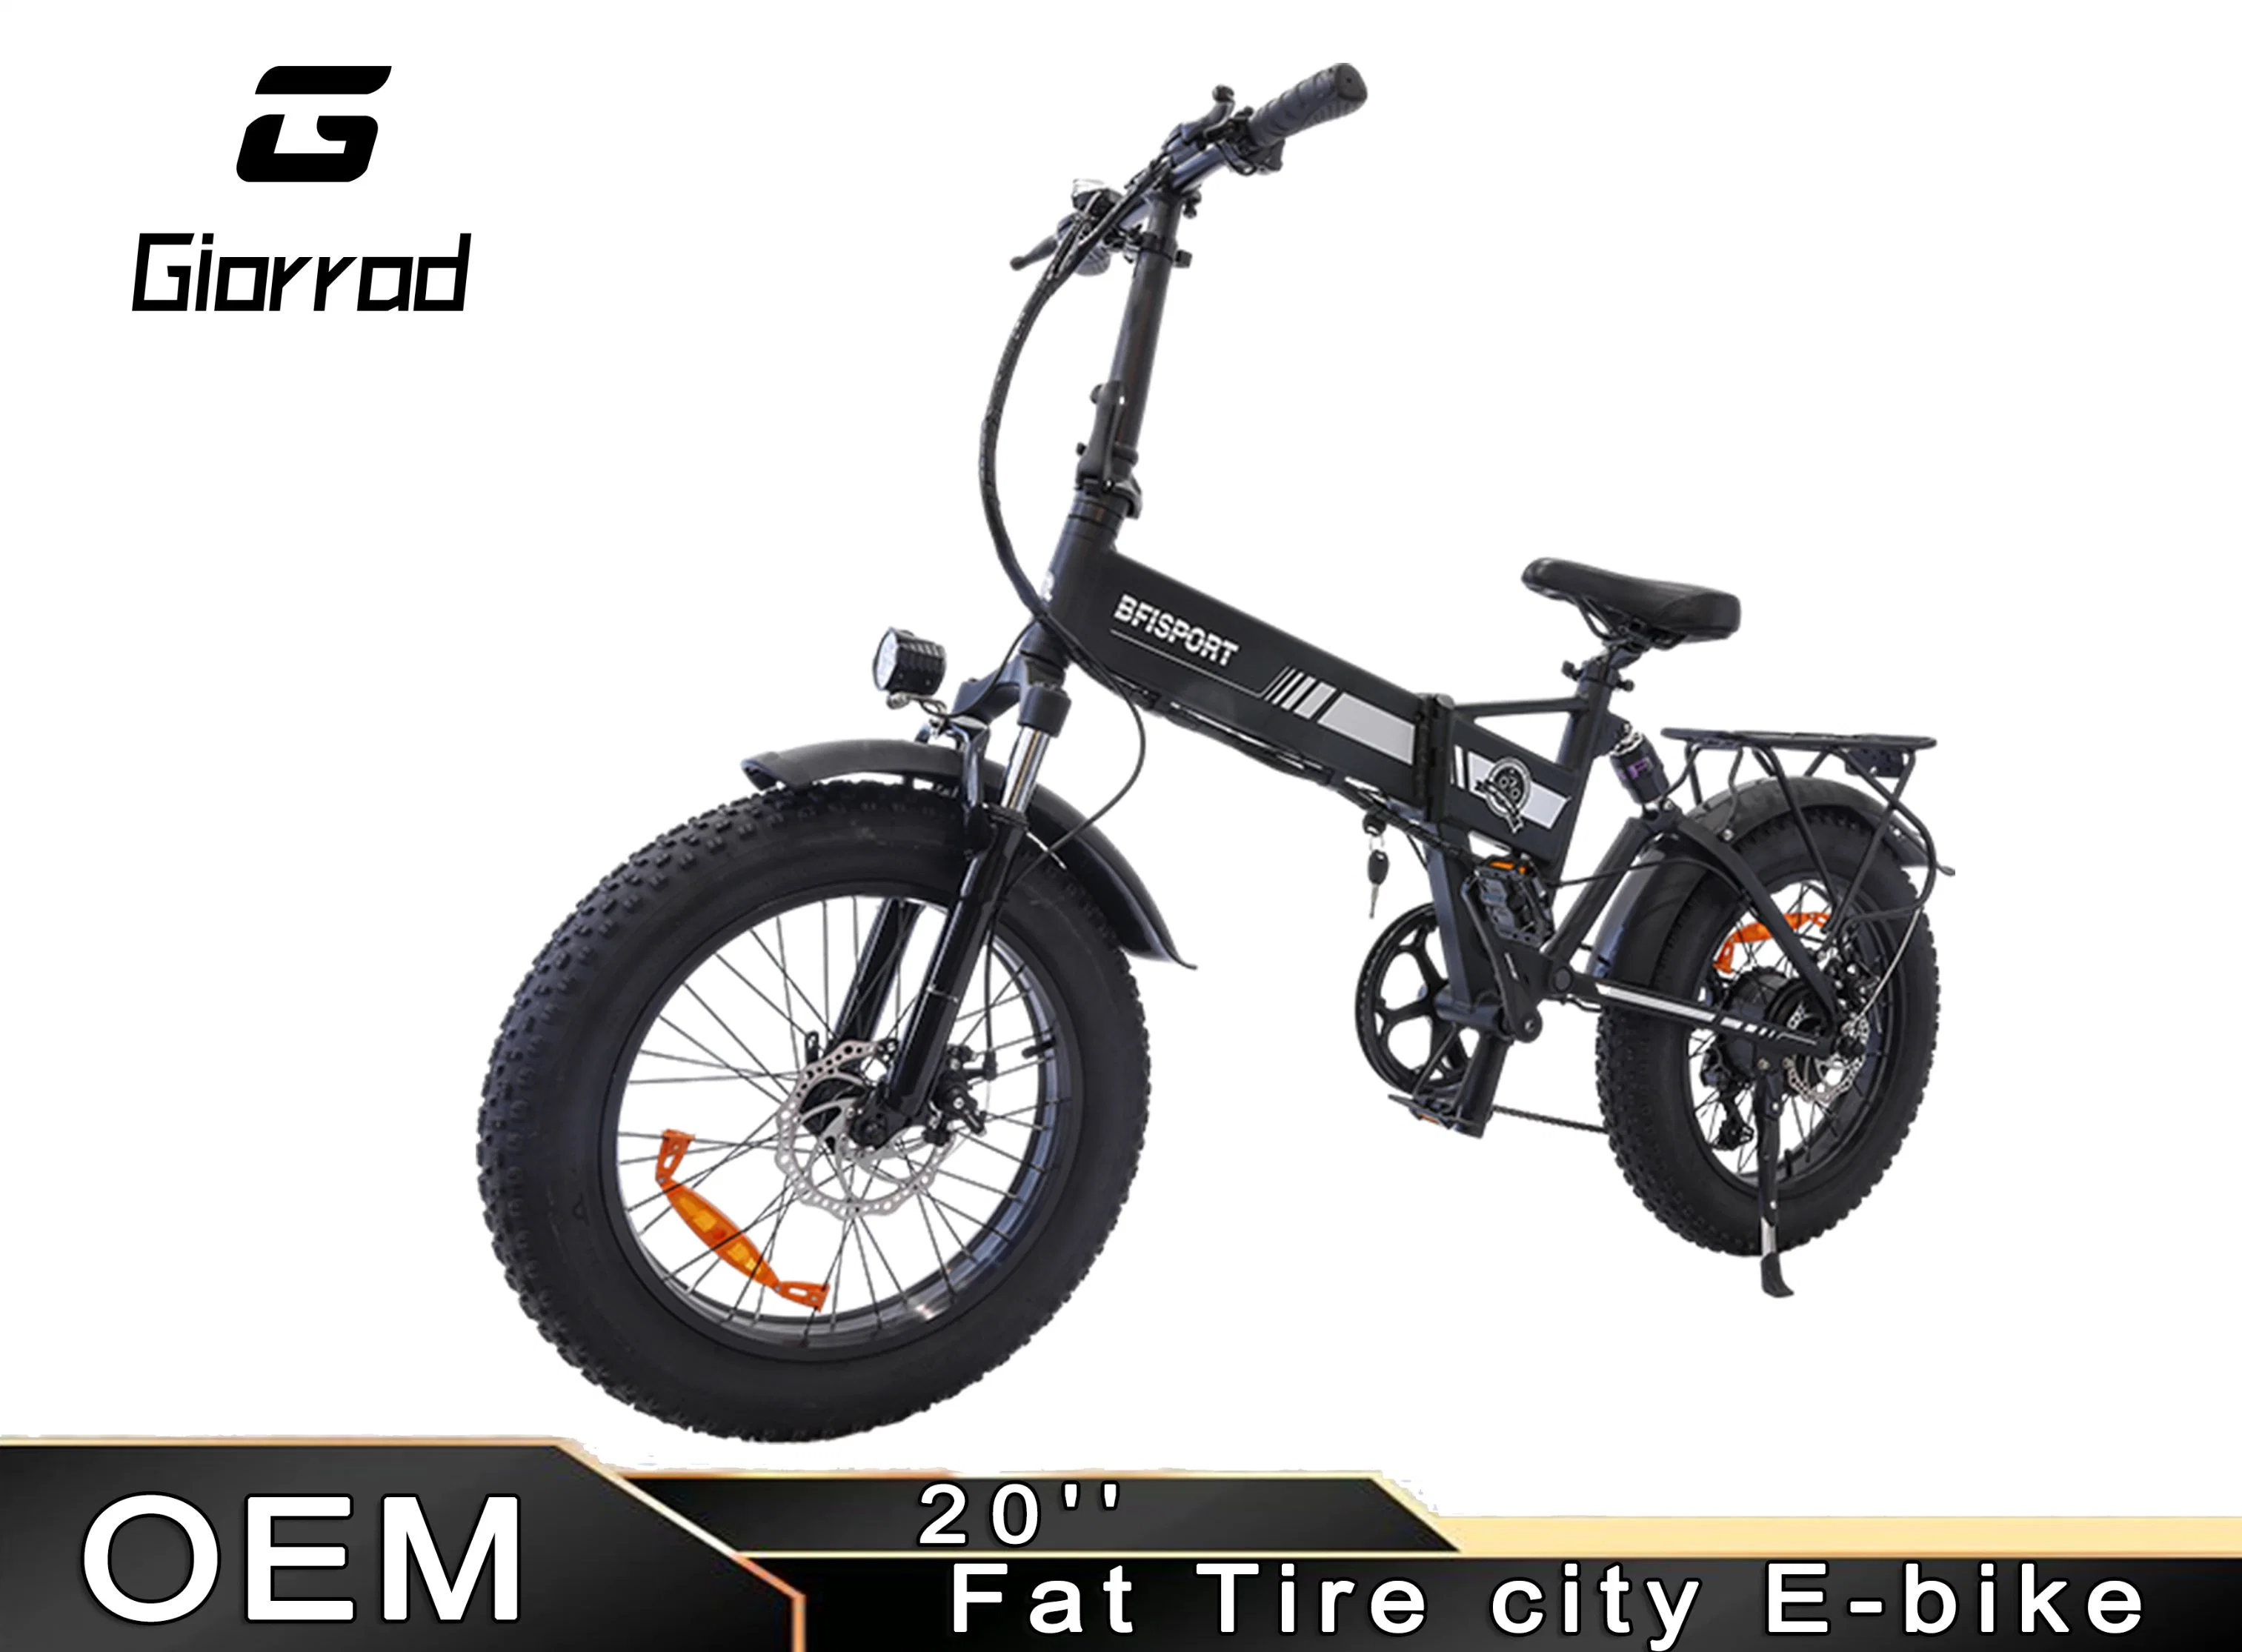 48V 500W Fat Tire Folding Electric Bike Adult Electric Bicycle Factory Motores disponibles en Stock en los Estados Unidos, incluyendo el envío